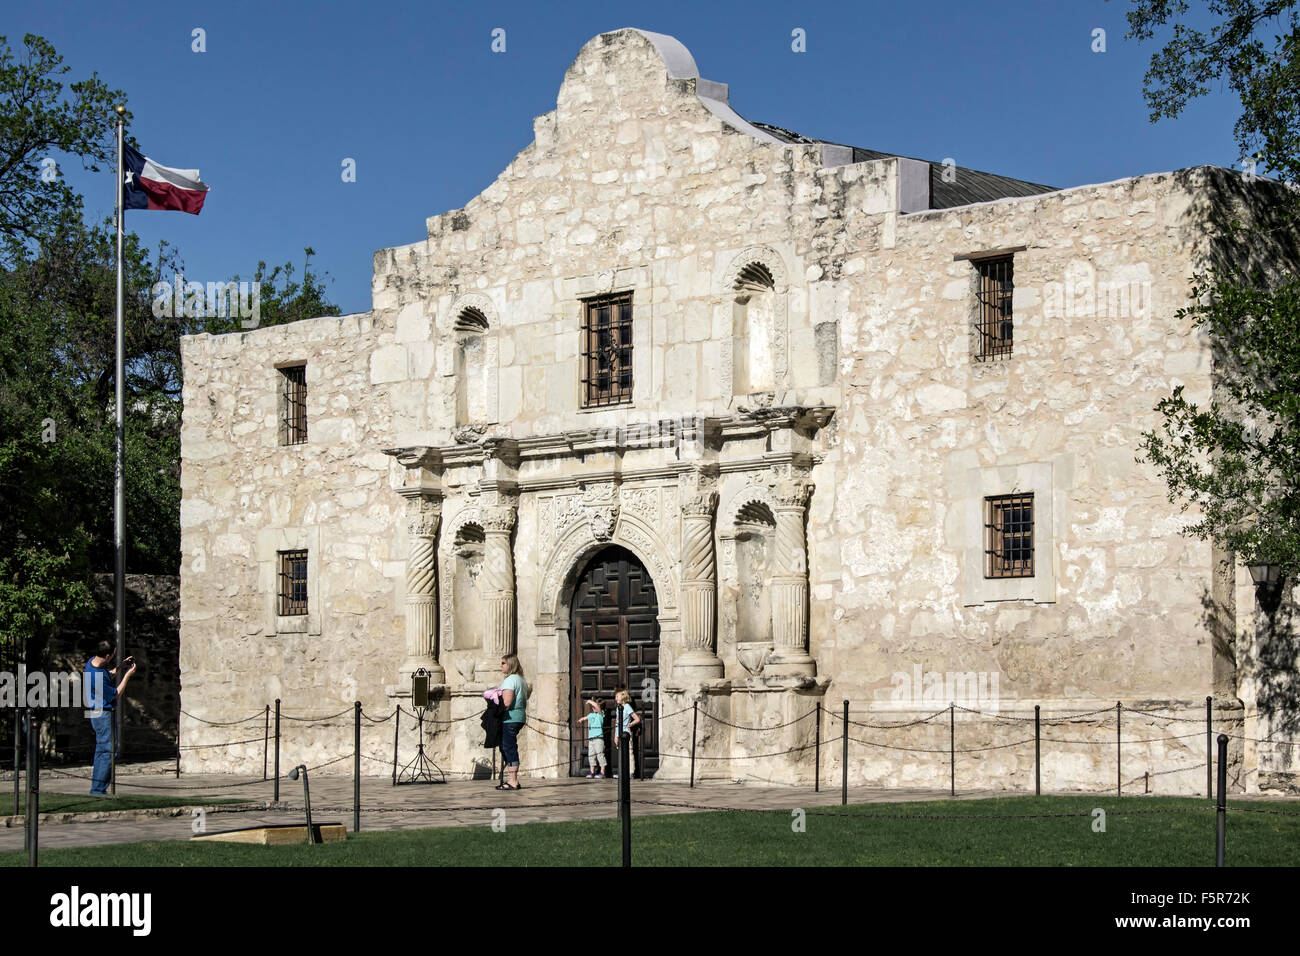 Le persone di fronte all'Alamo (la missione di San Antonio de Valero), San Antonio, Texas, Stati Uniti d'America Foto Stock